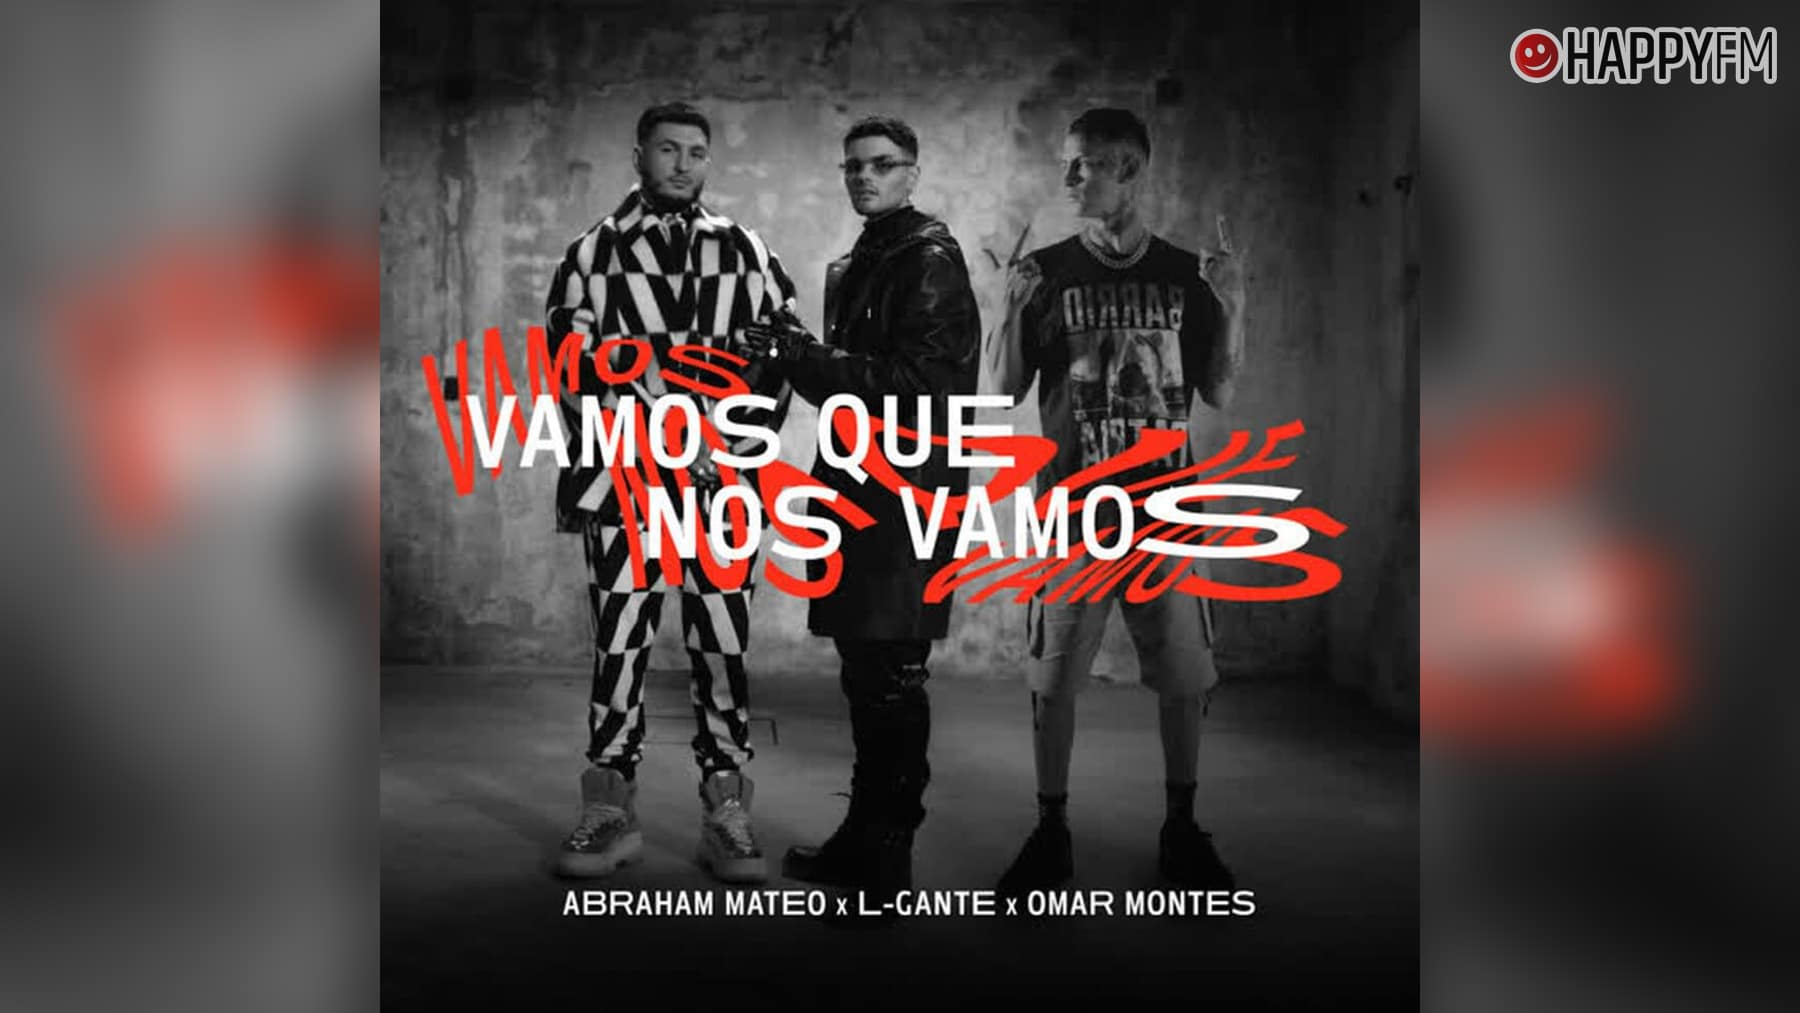 ‘Vamos que nos vamos’, de Abraham Mateo, L-Gante y Omar Montes: letra y vídeo